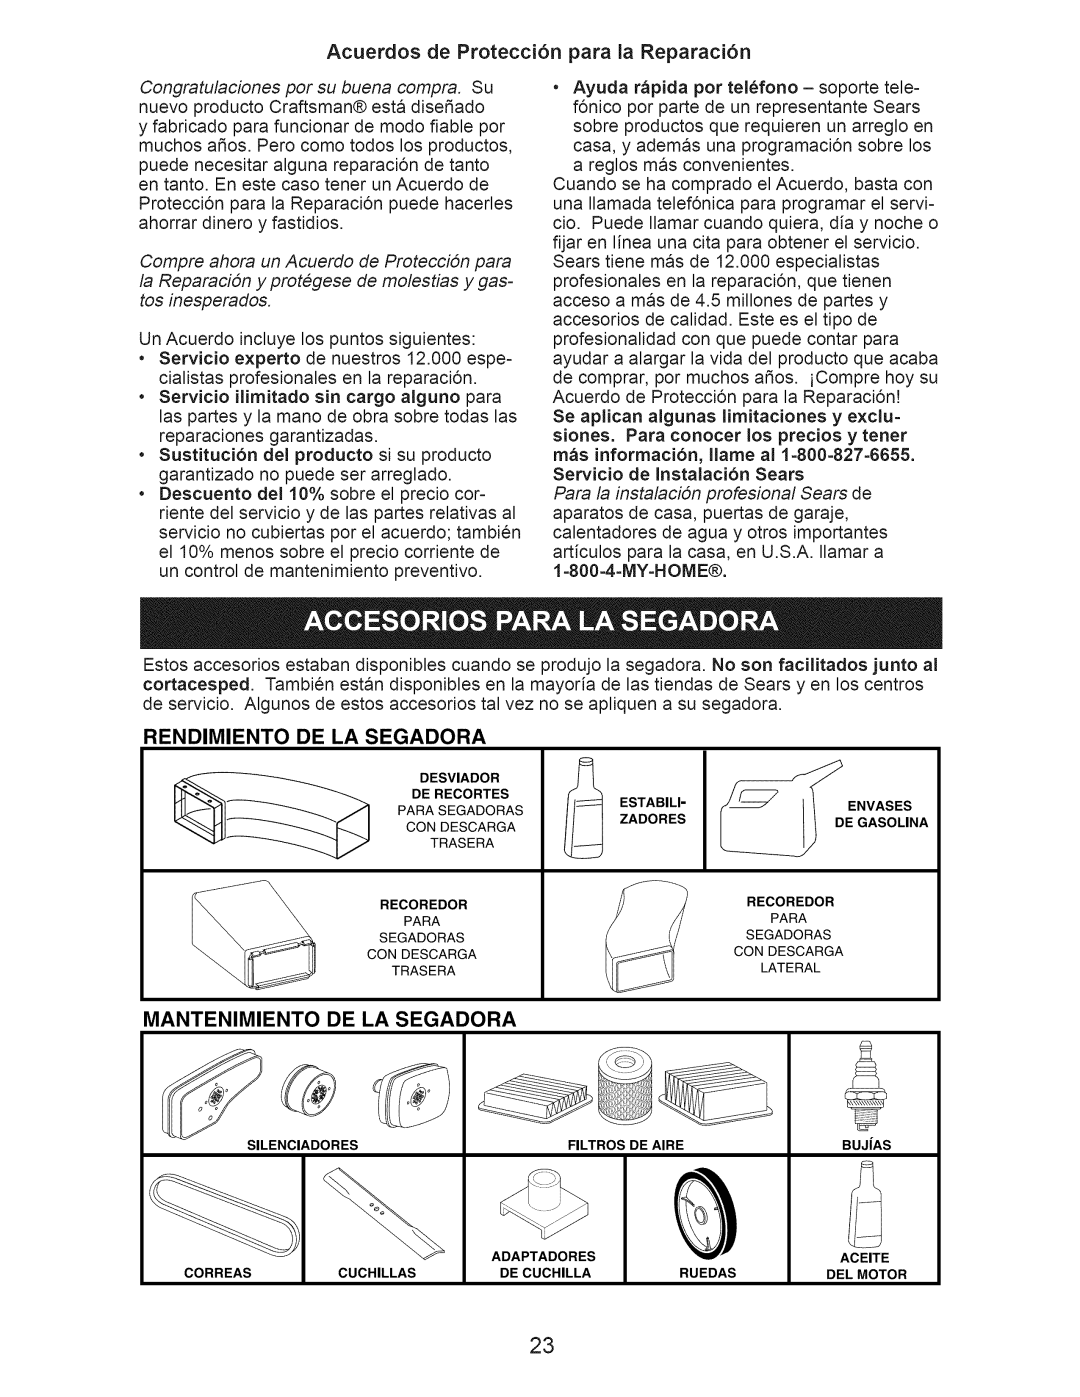 Craftsman 917.376406 owner manual Acuerdos de Protecci6n para la Reparaci6n, Rendimiento, De La Segadora, Mantenimiento 